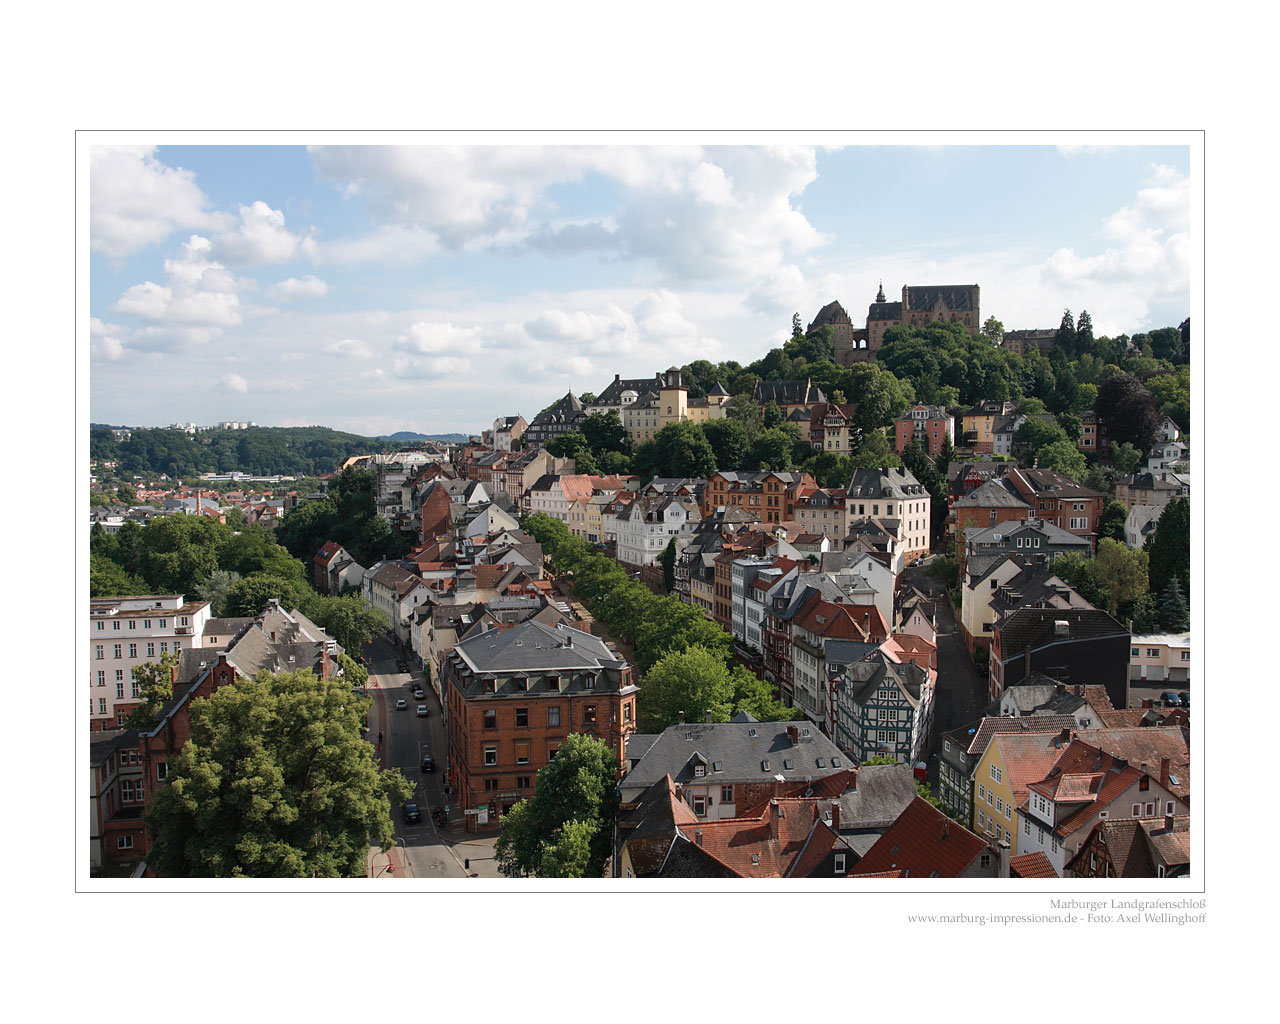 Blick auf das Marburger Schloß